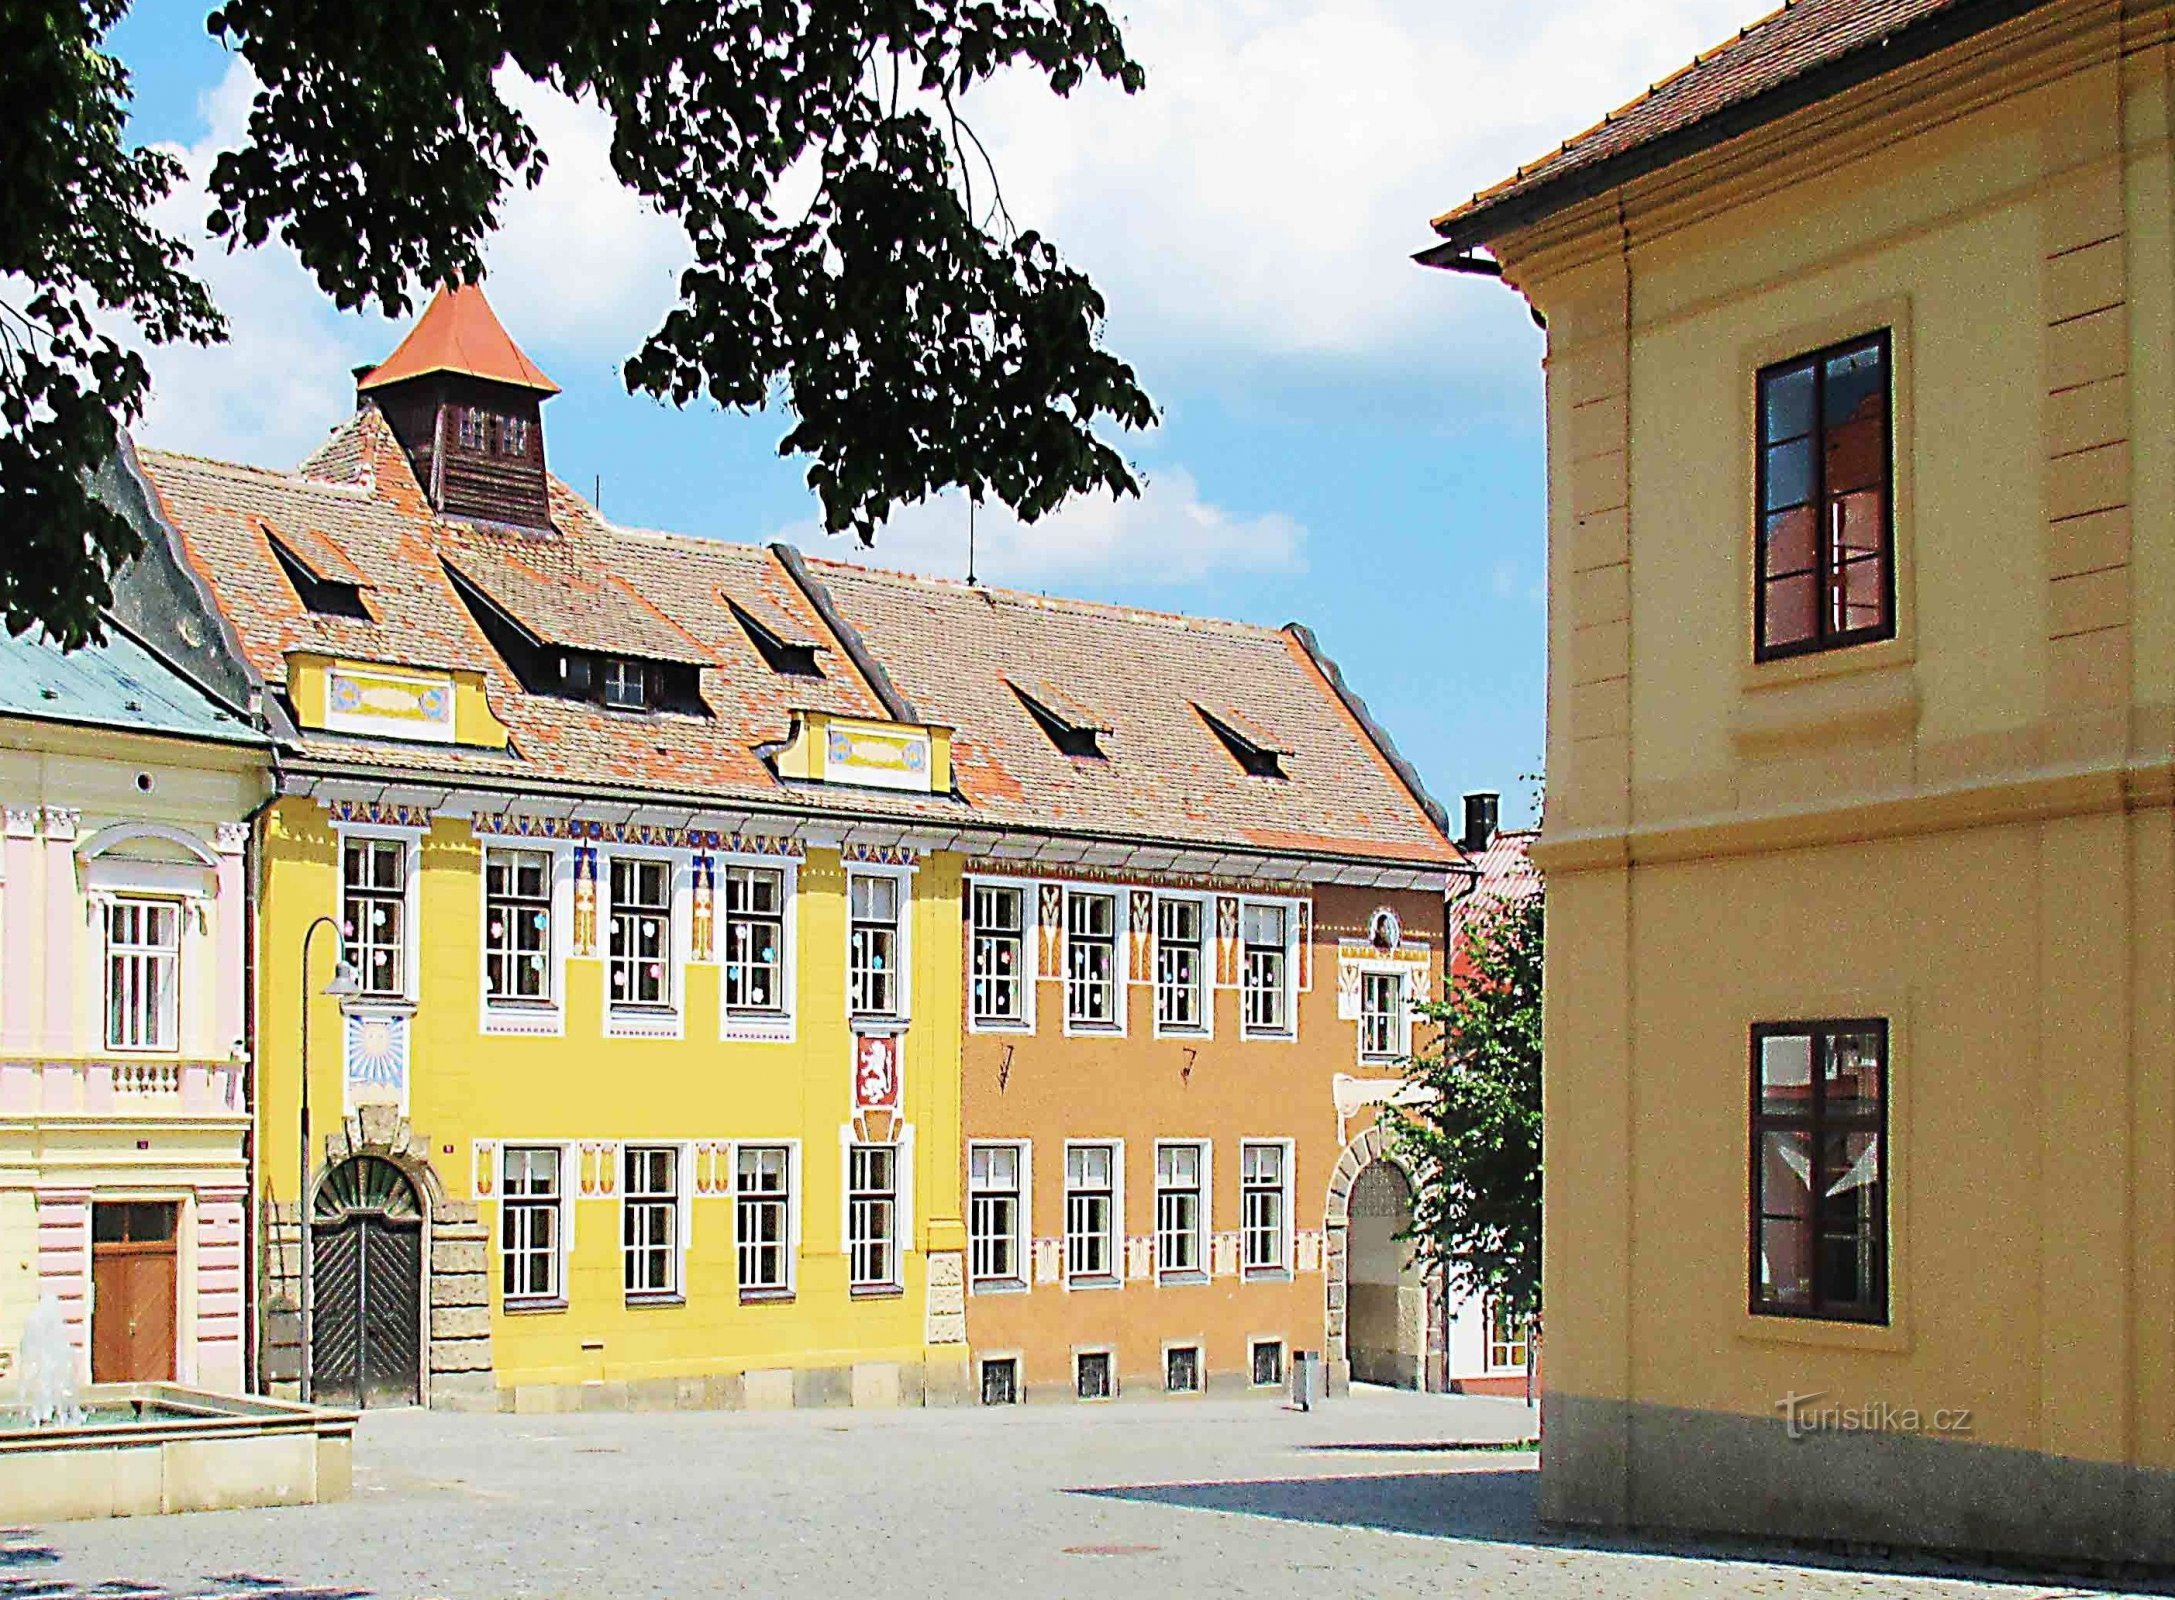 Városi iskola - történelmi épület Opočnoban